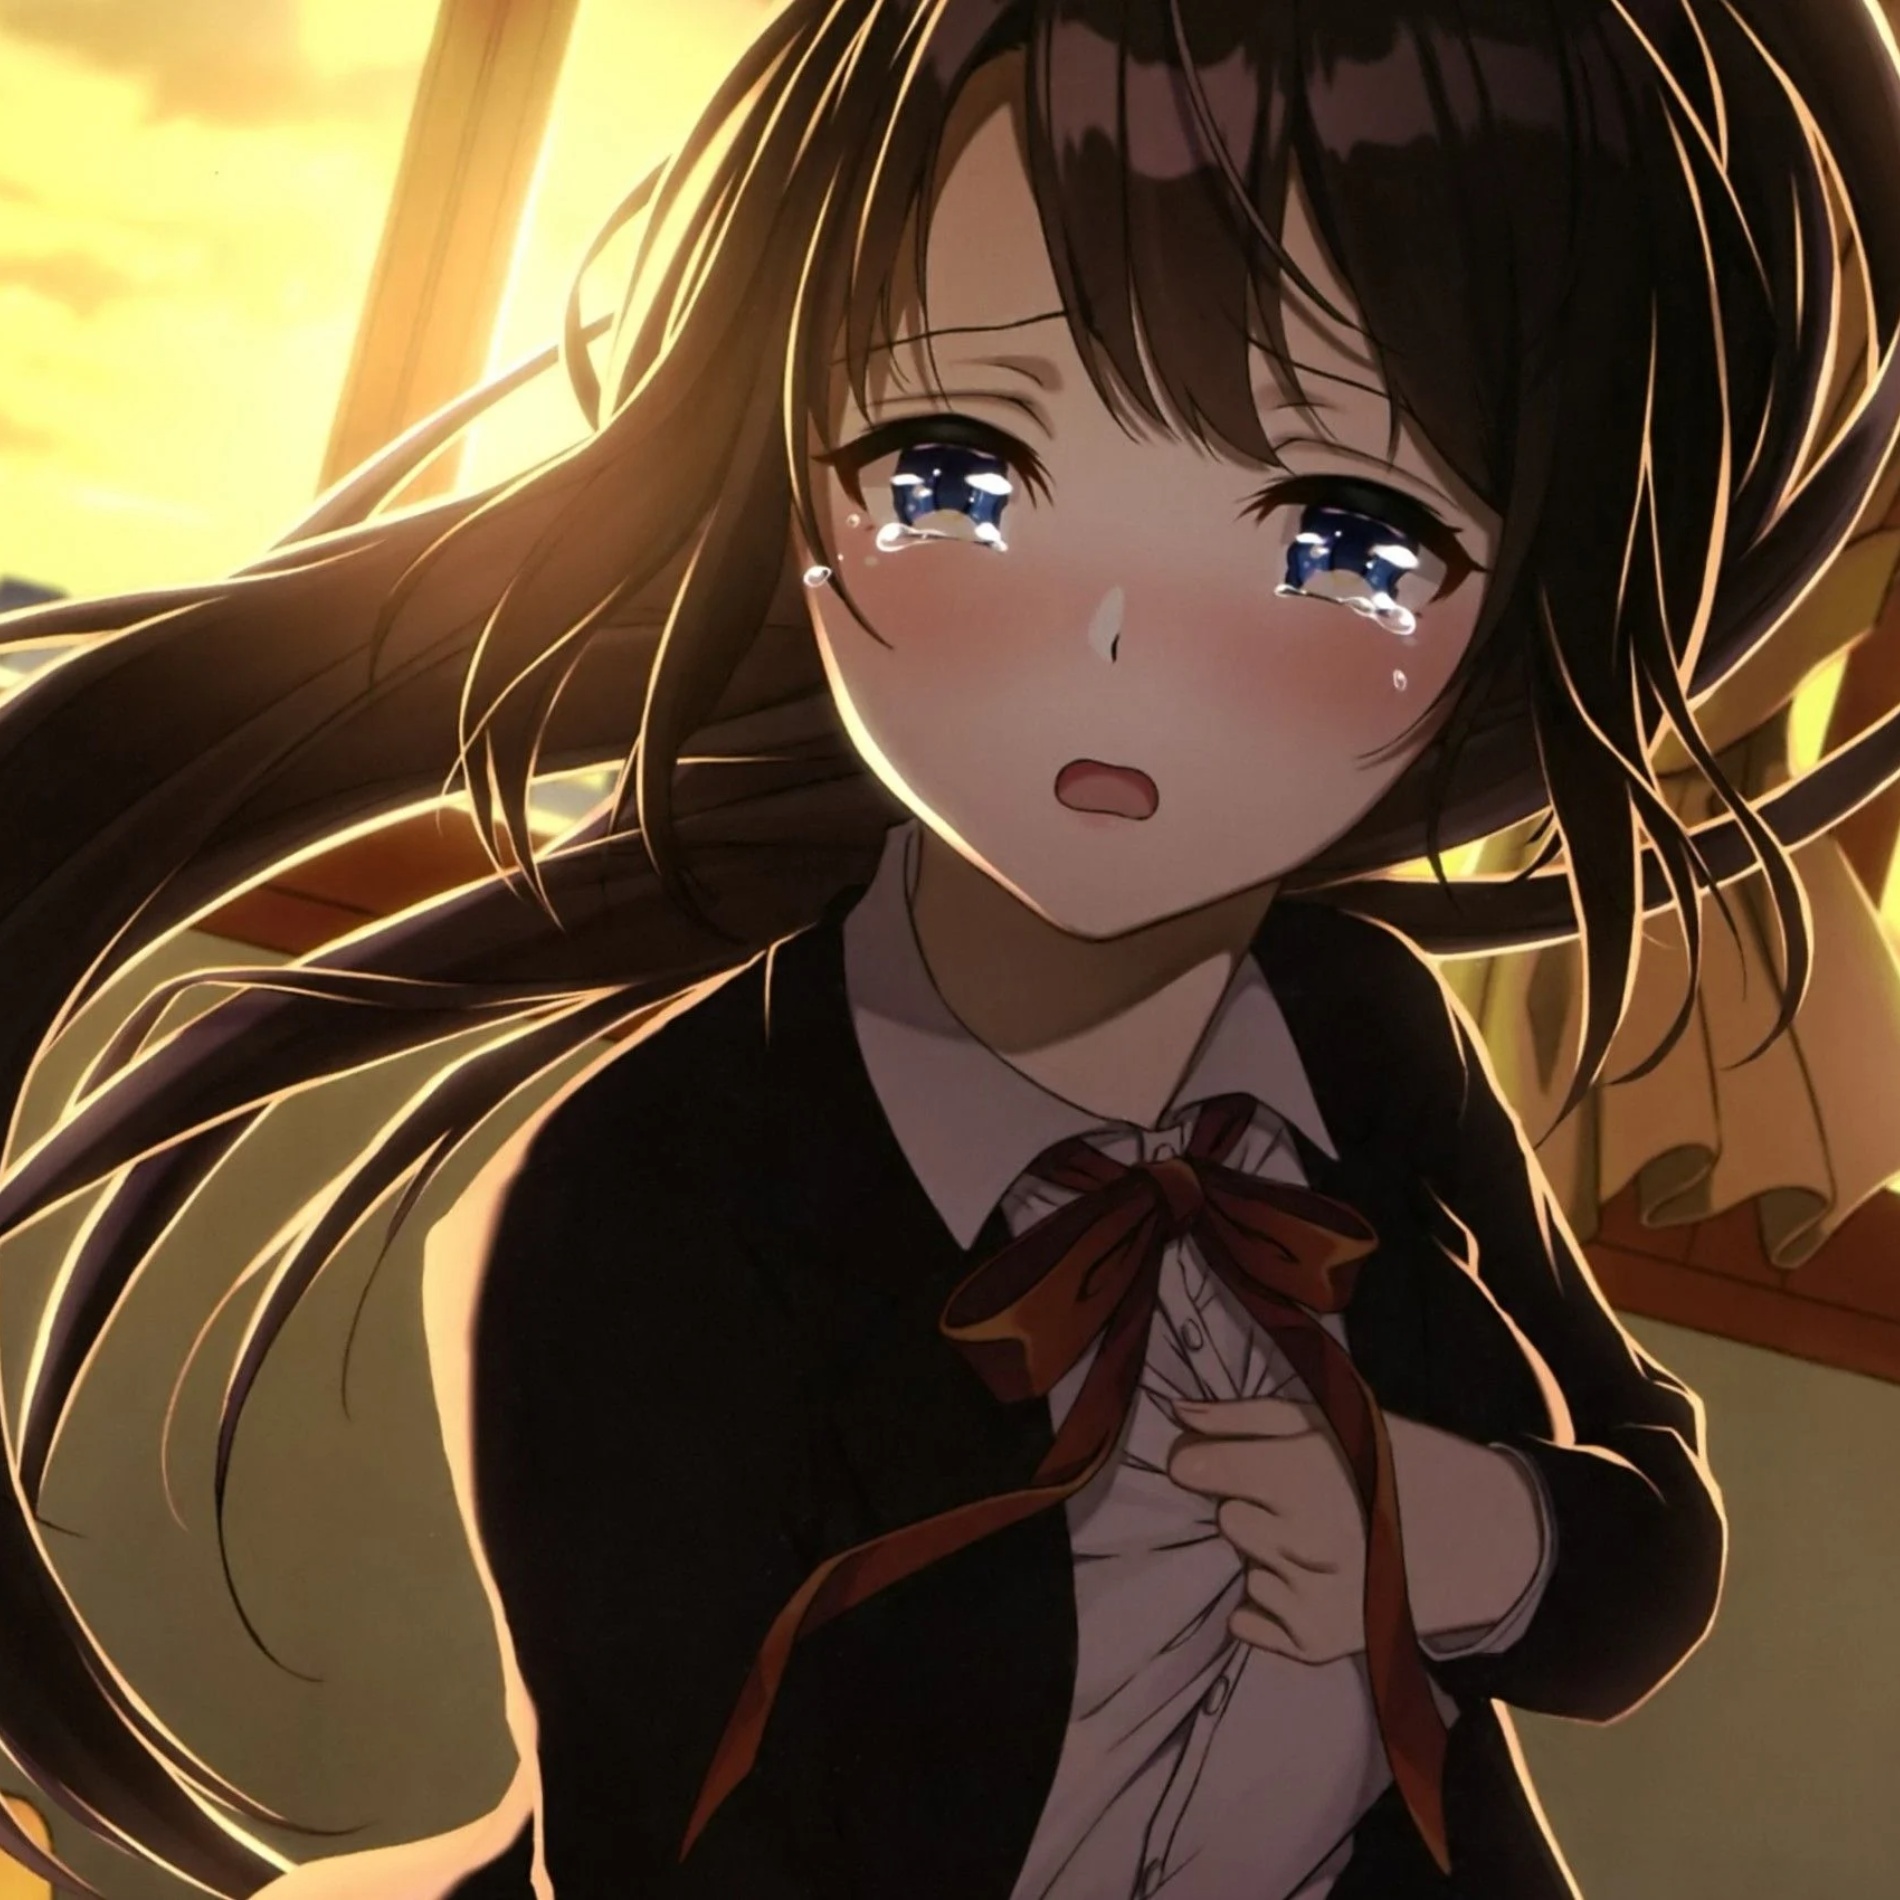 Sad Anime Girl Profile Pic